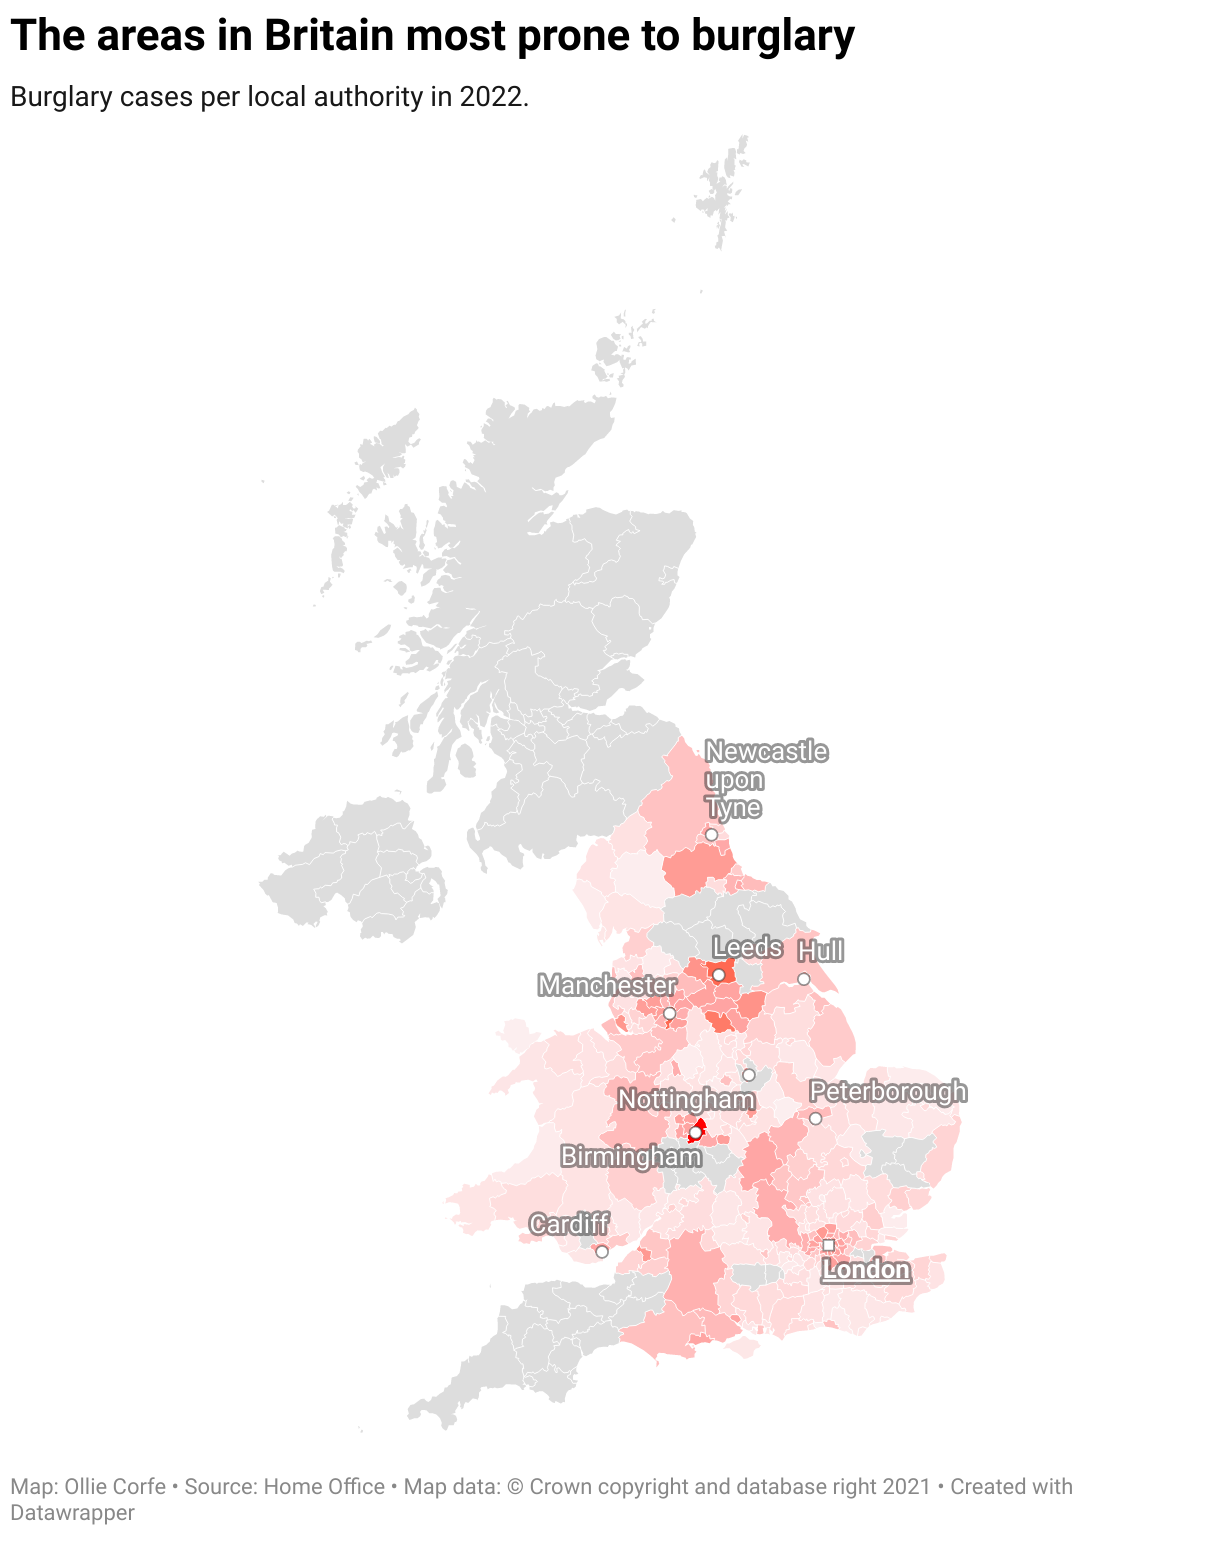 Burglary map of Britain.